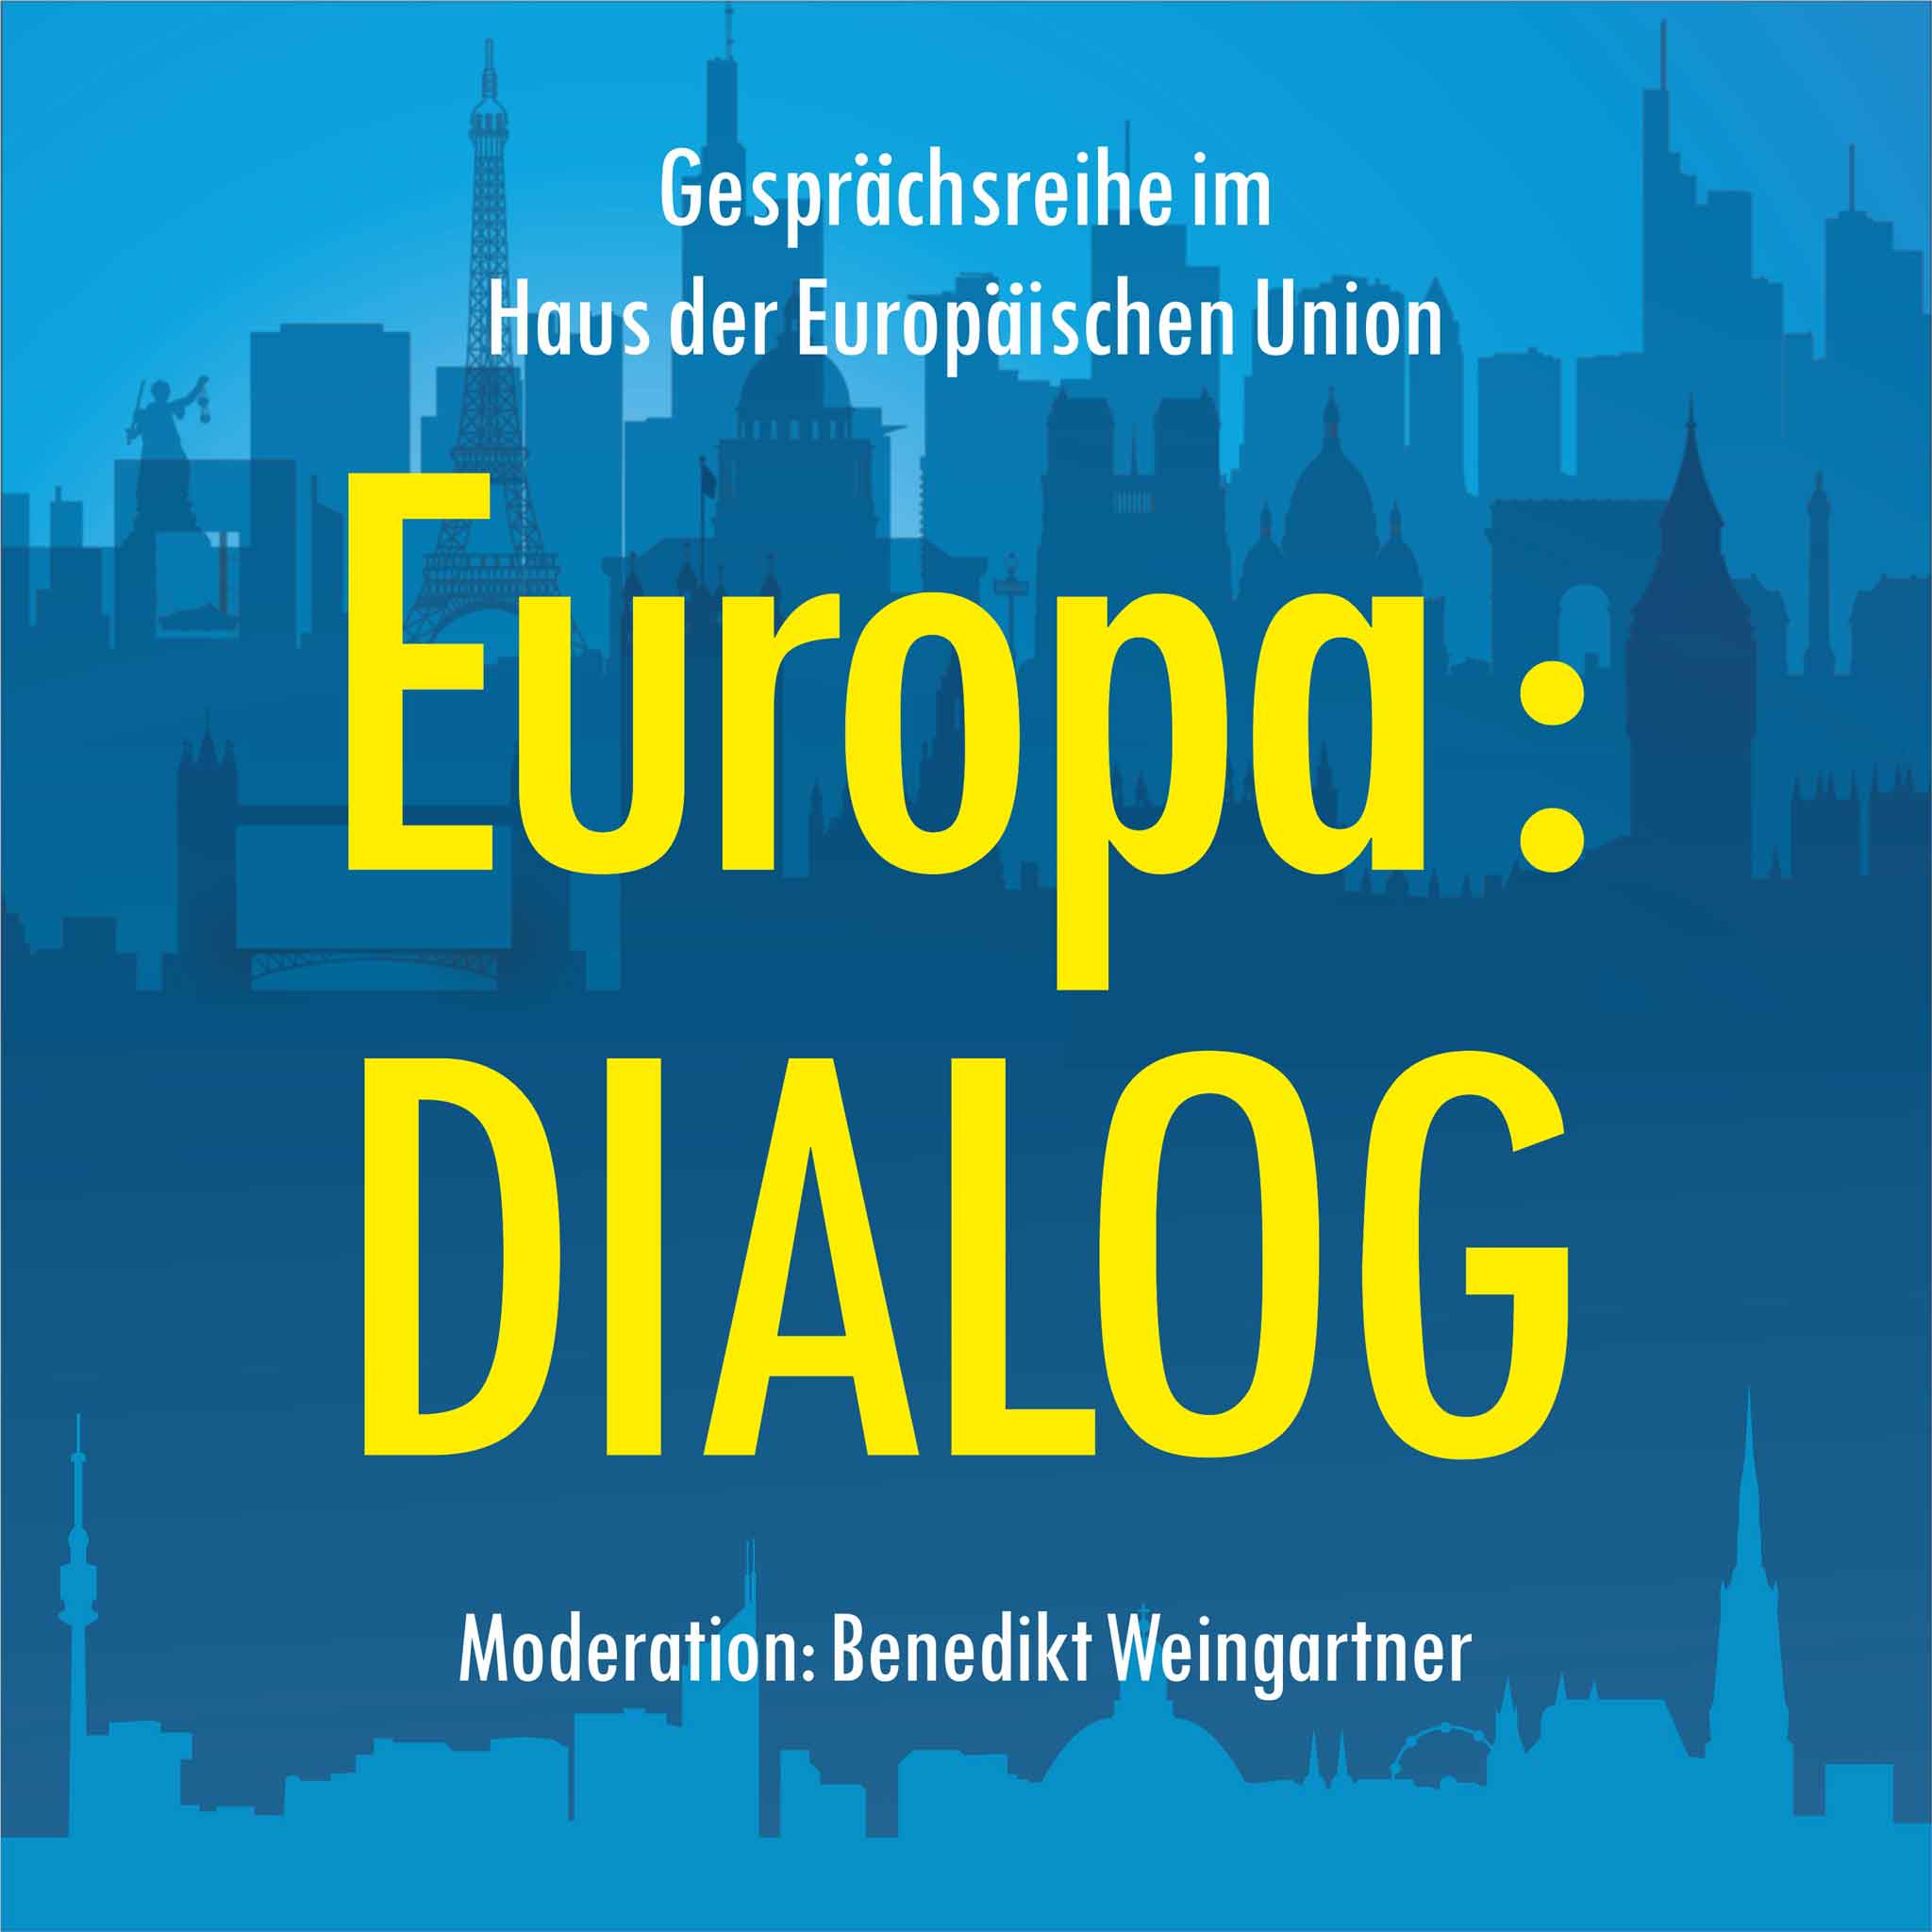 Europa : DIALOG